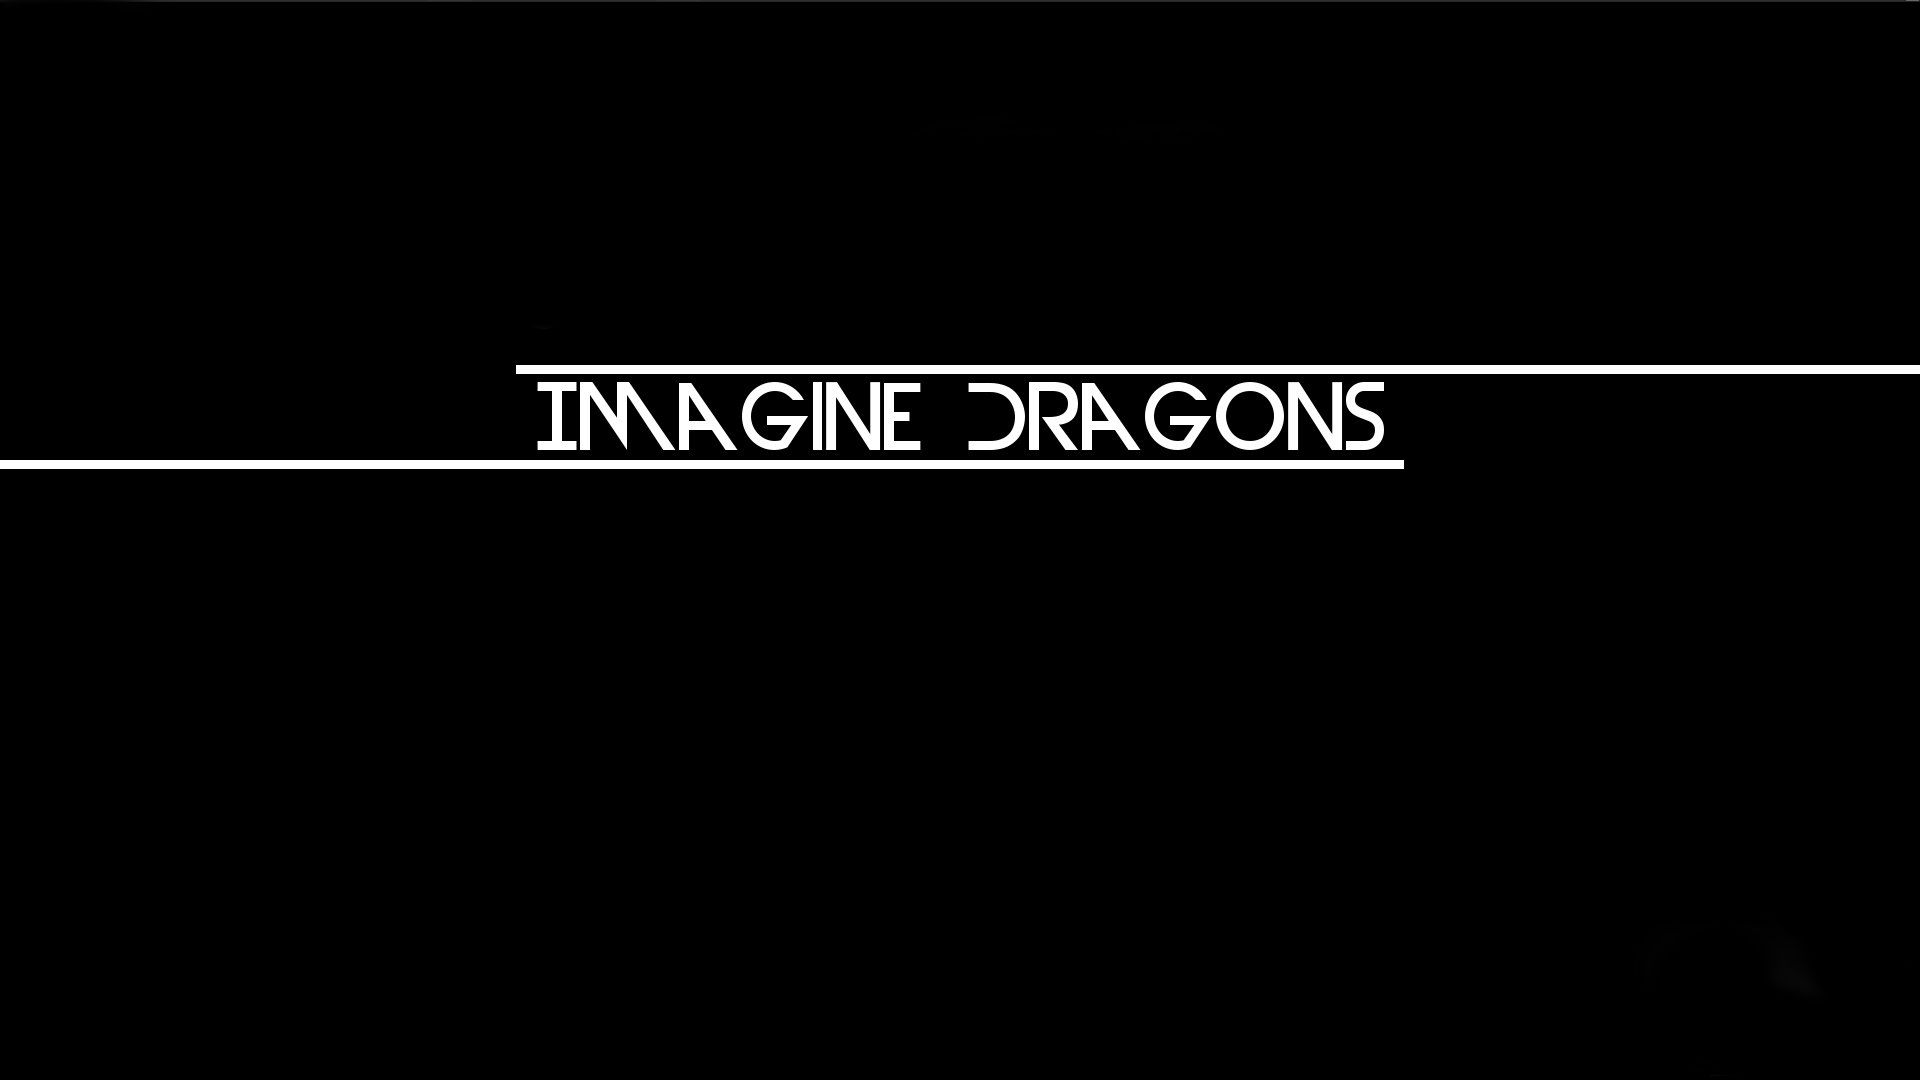 Descargar fondos de escritorio de Imagina Dragones HD